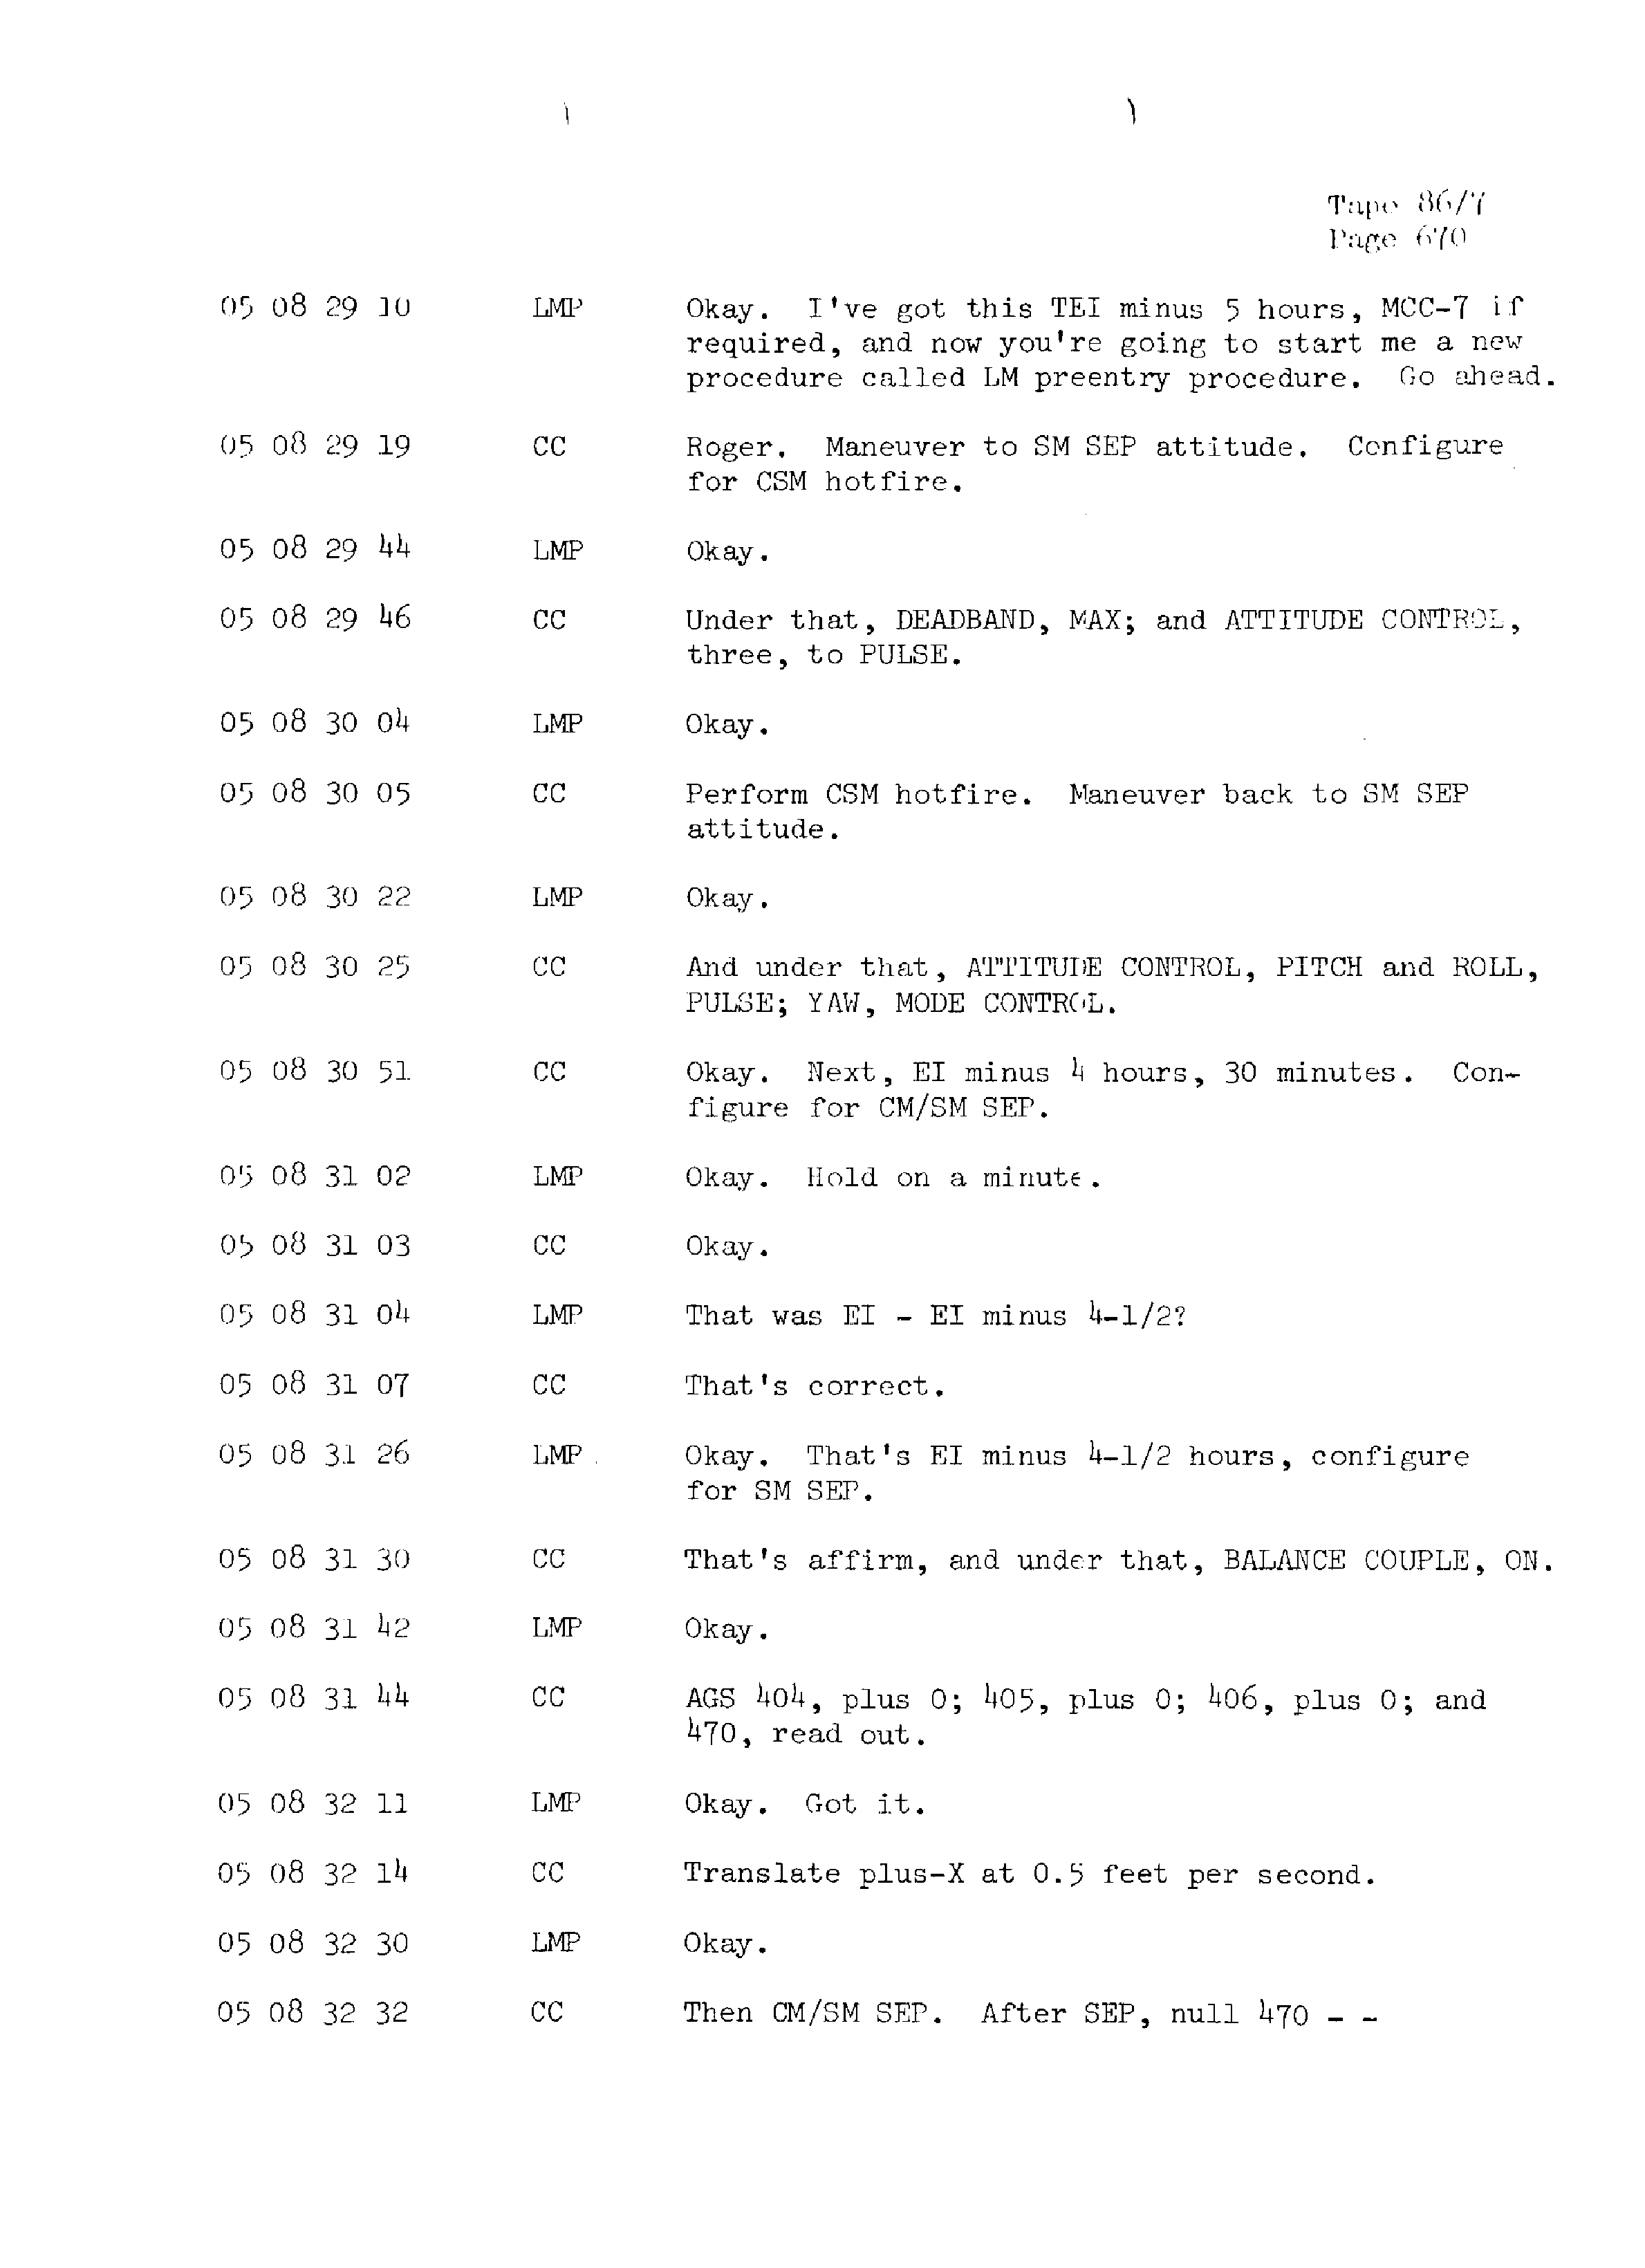 Page 677 of Apollo 13’s original transcript